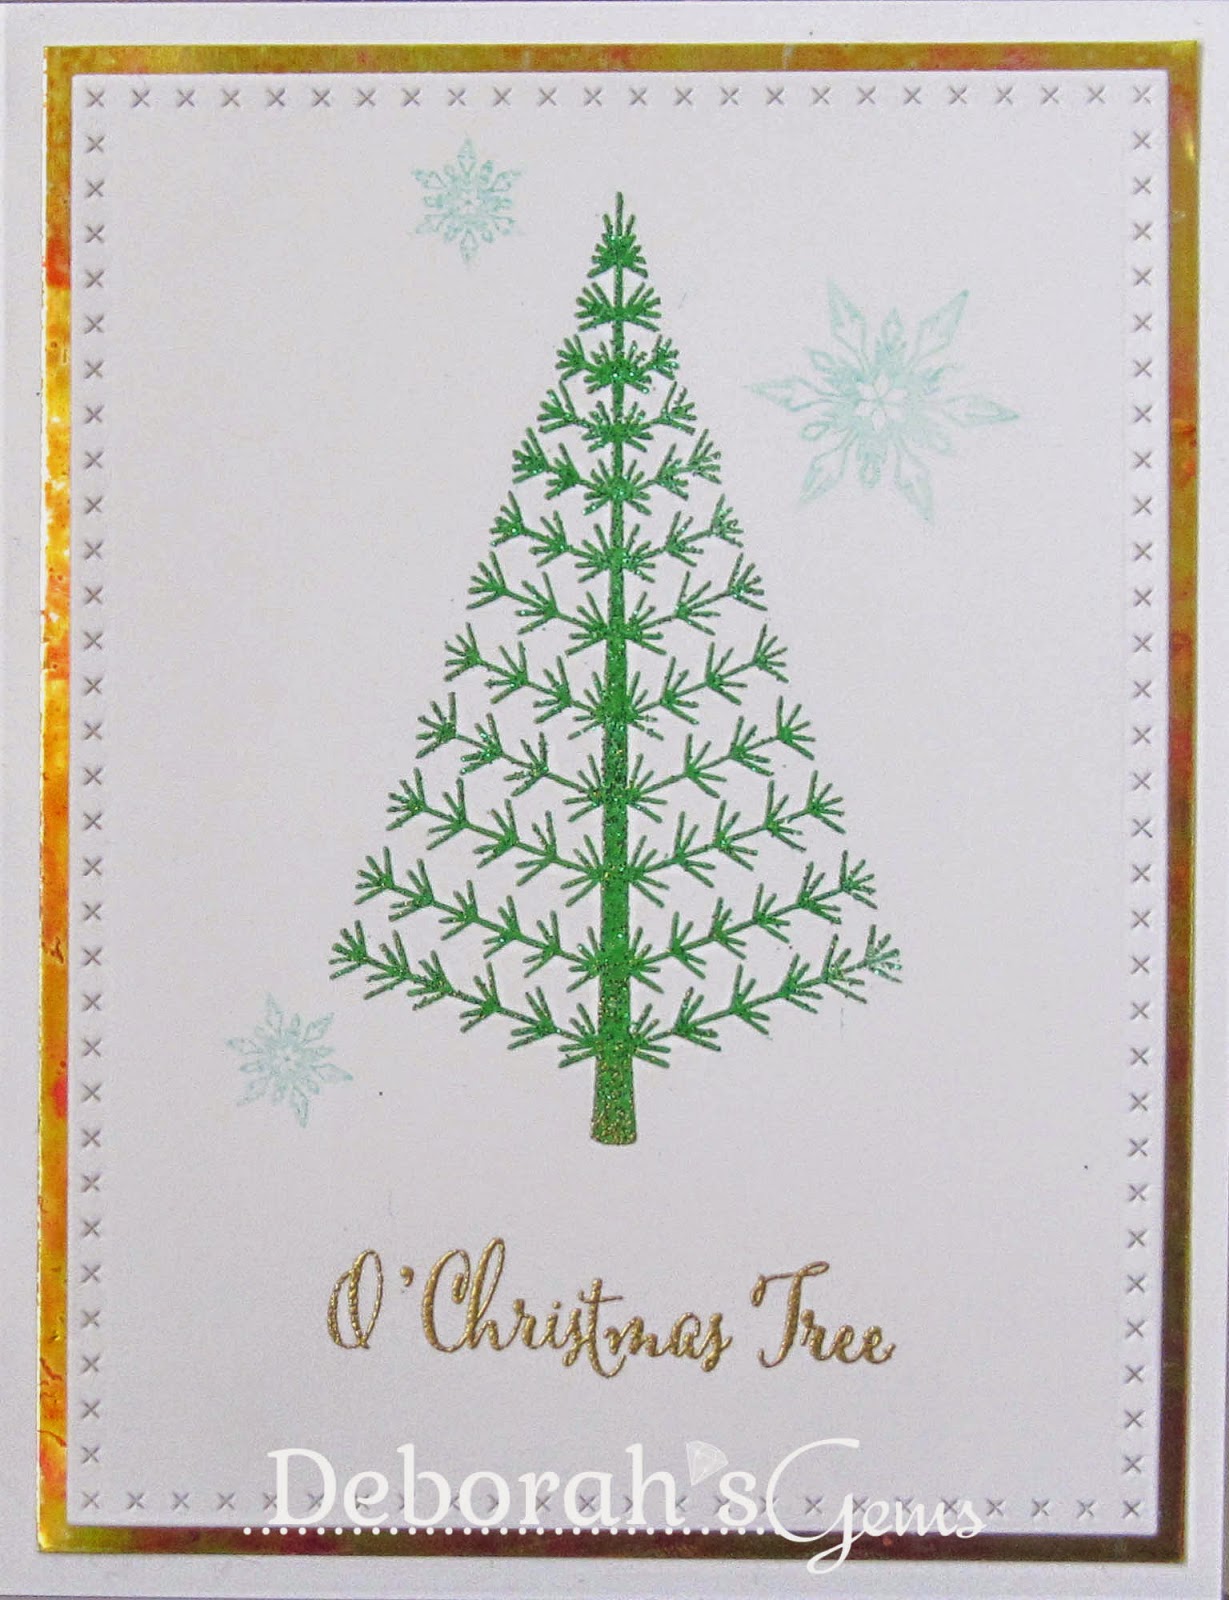 O Christmas Tree - photo by Deborah Frings - Deborah's Gems